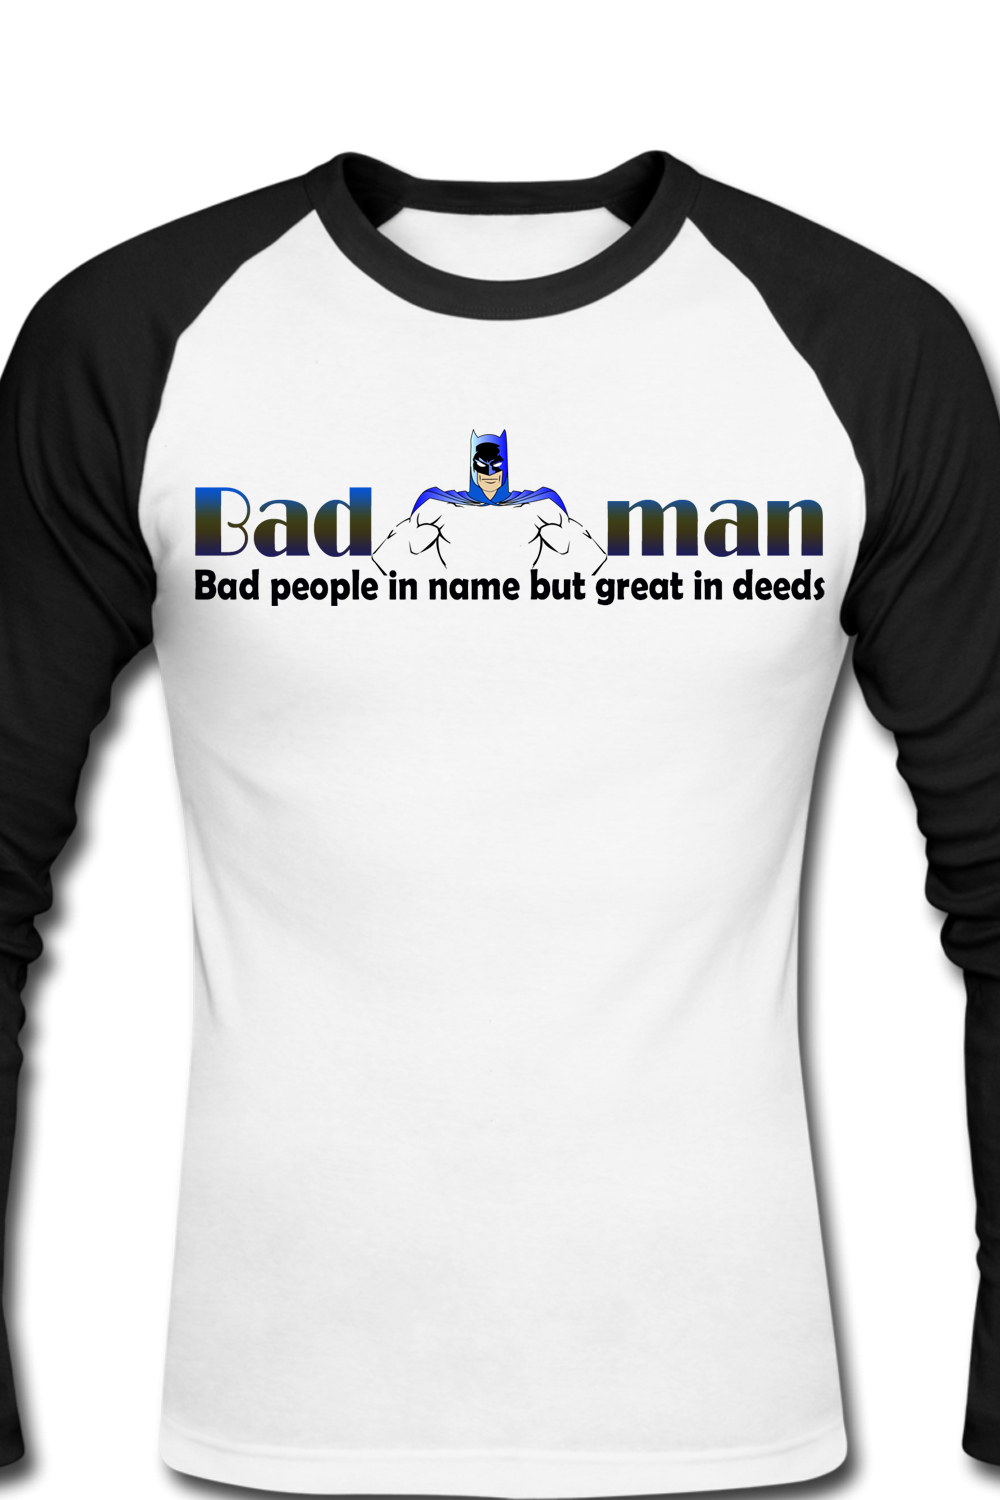 Bedman t-shirt design pinterest preview image.